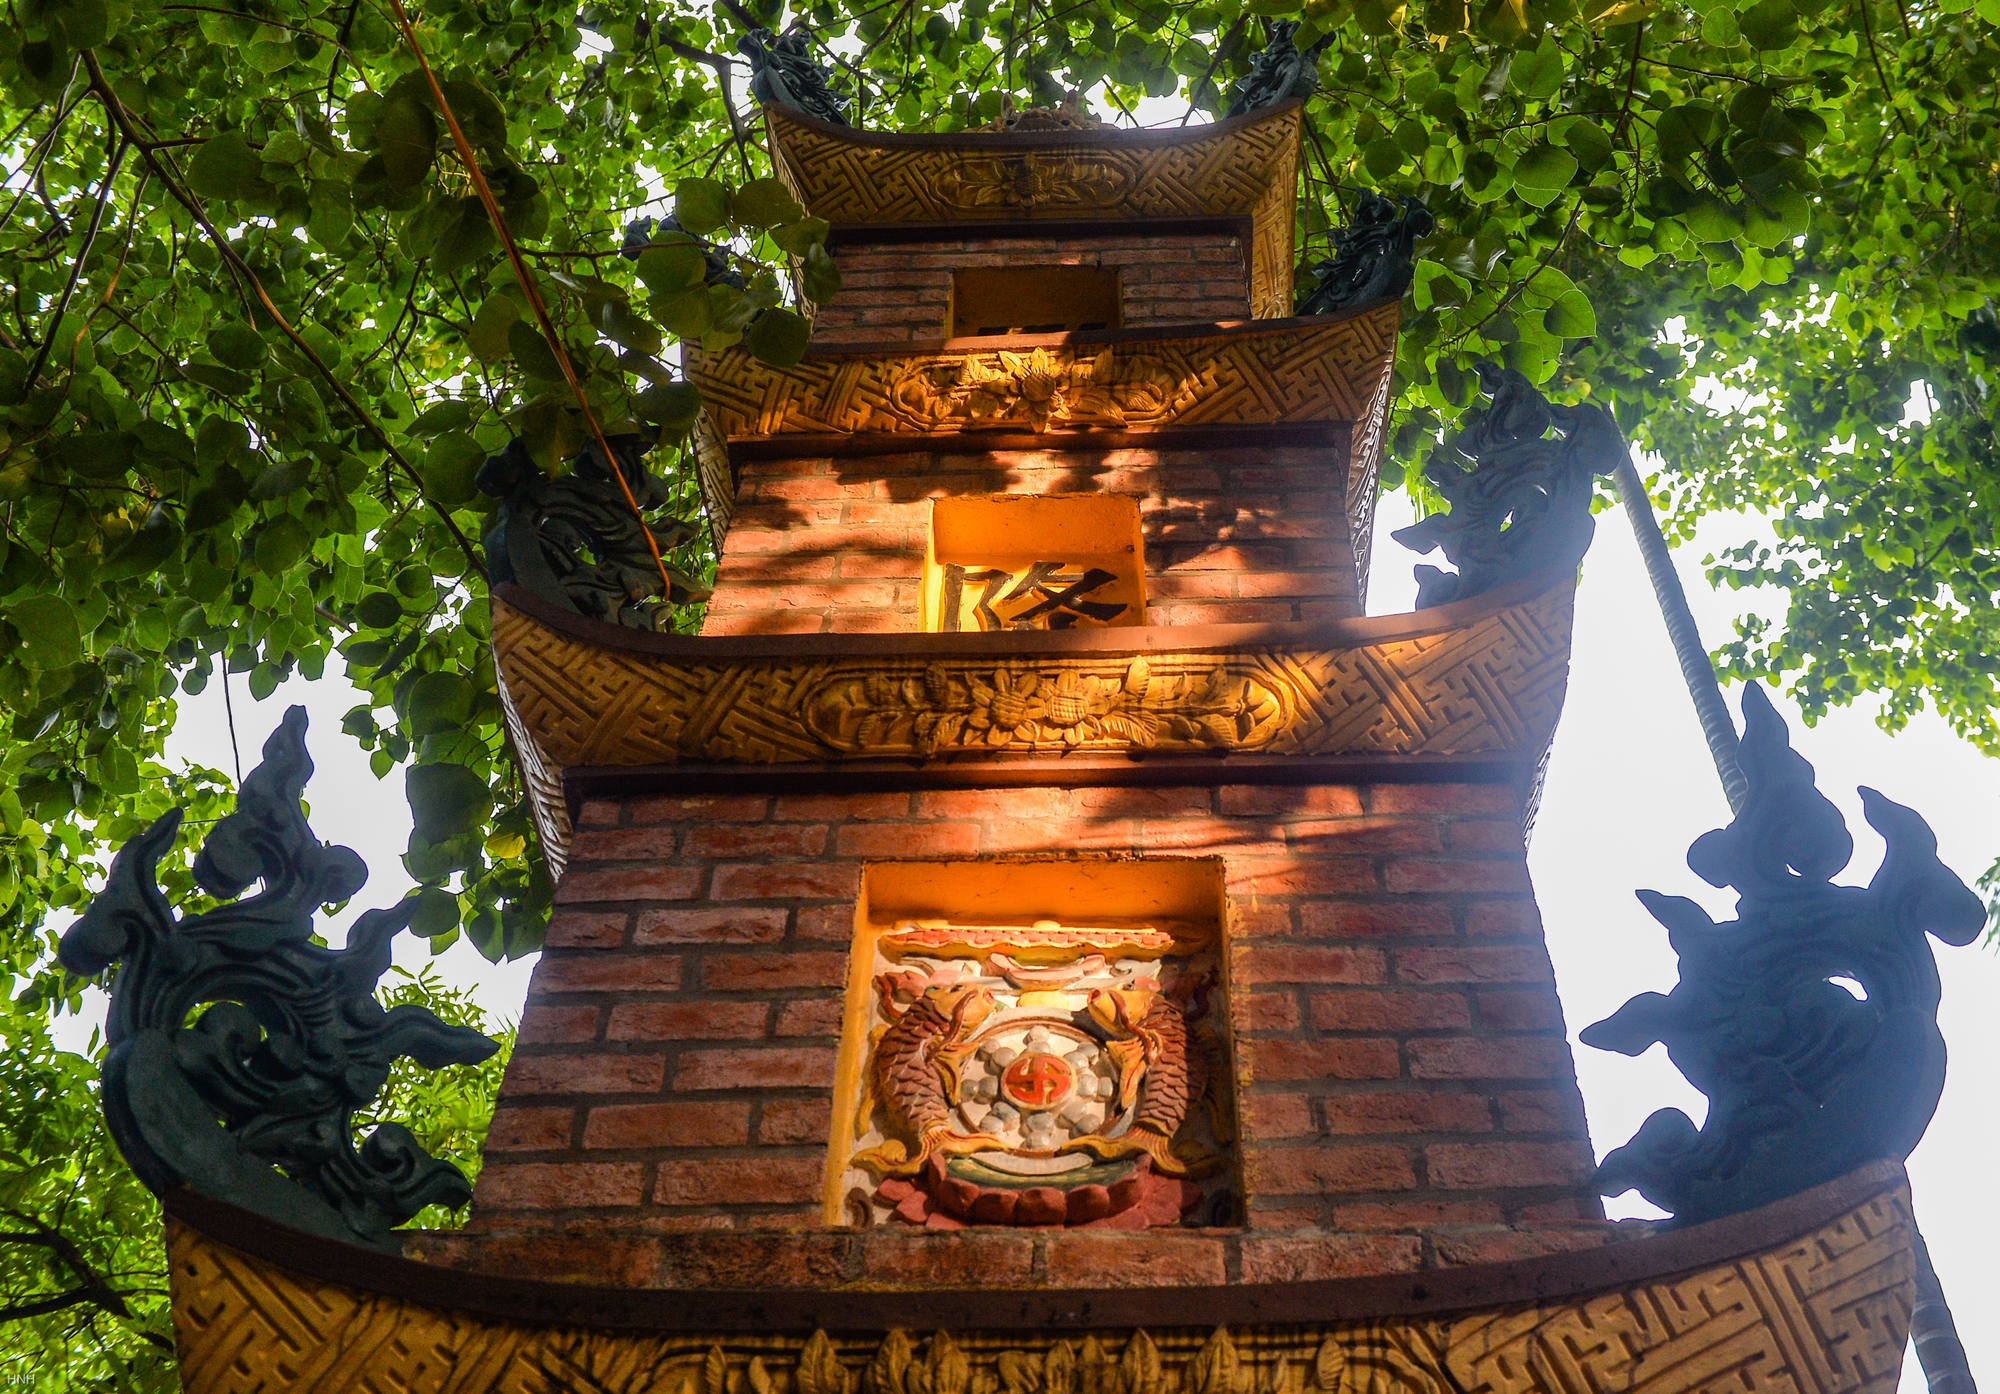 Chiêm ngưỡng ngôi chùa gốm sứ độc đáo tại Hà Nội - Ảnh 5.